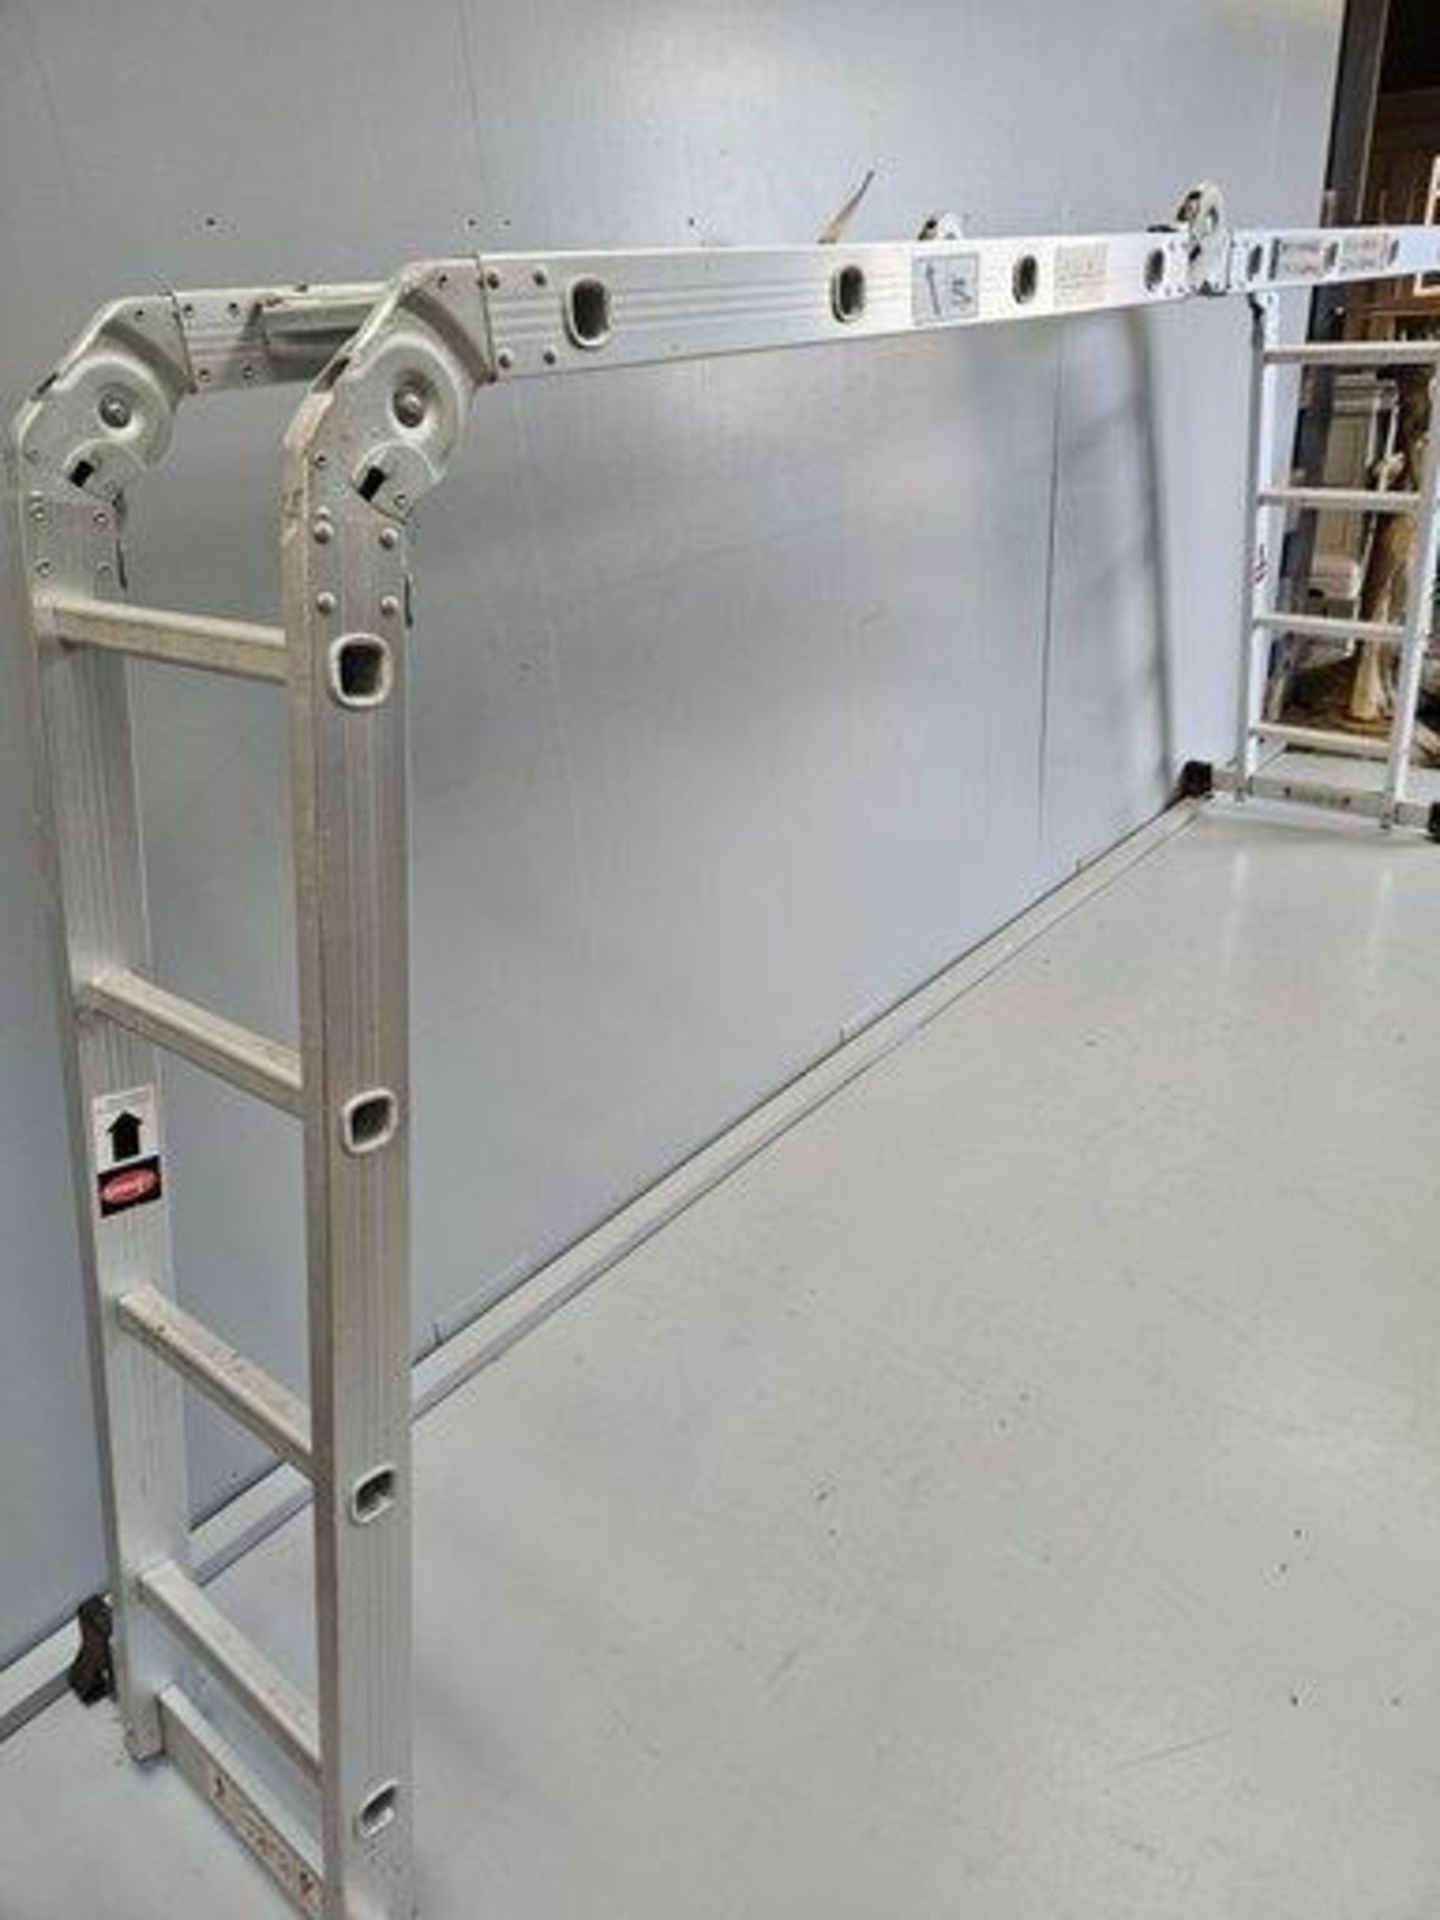 Work Expert Aluminium Multi-Purpose Ladder - Image 3 of 3